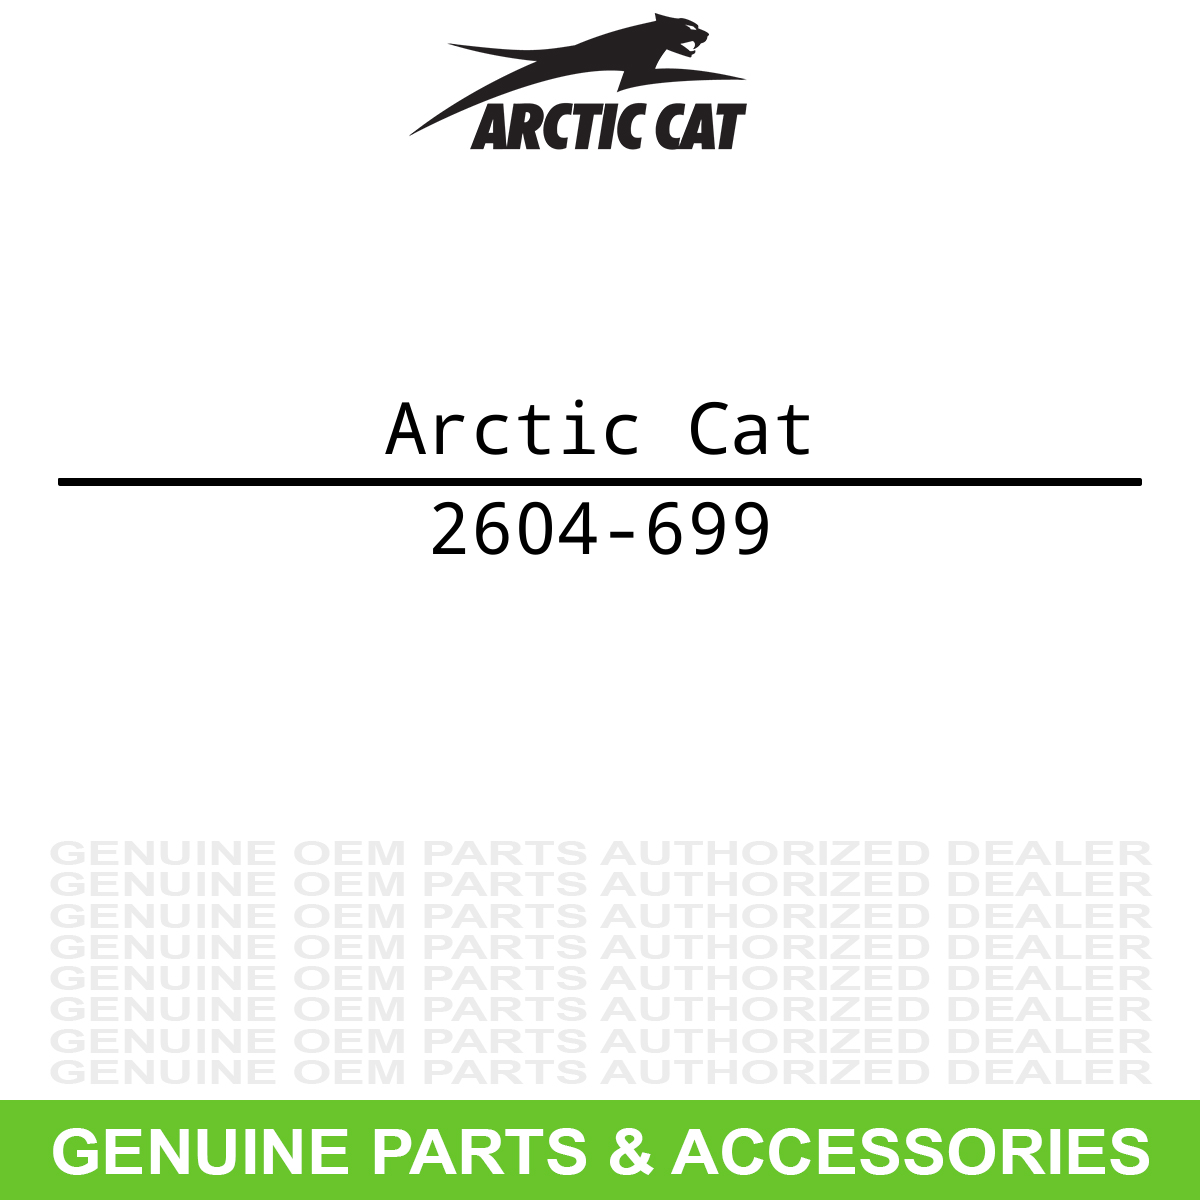 Arctic Cat 2604-699